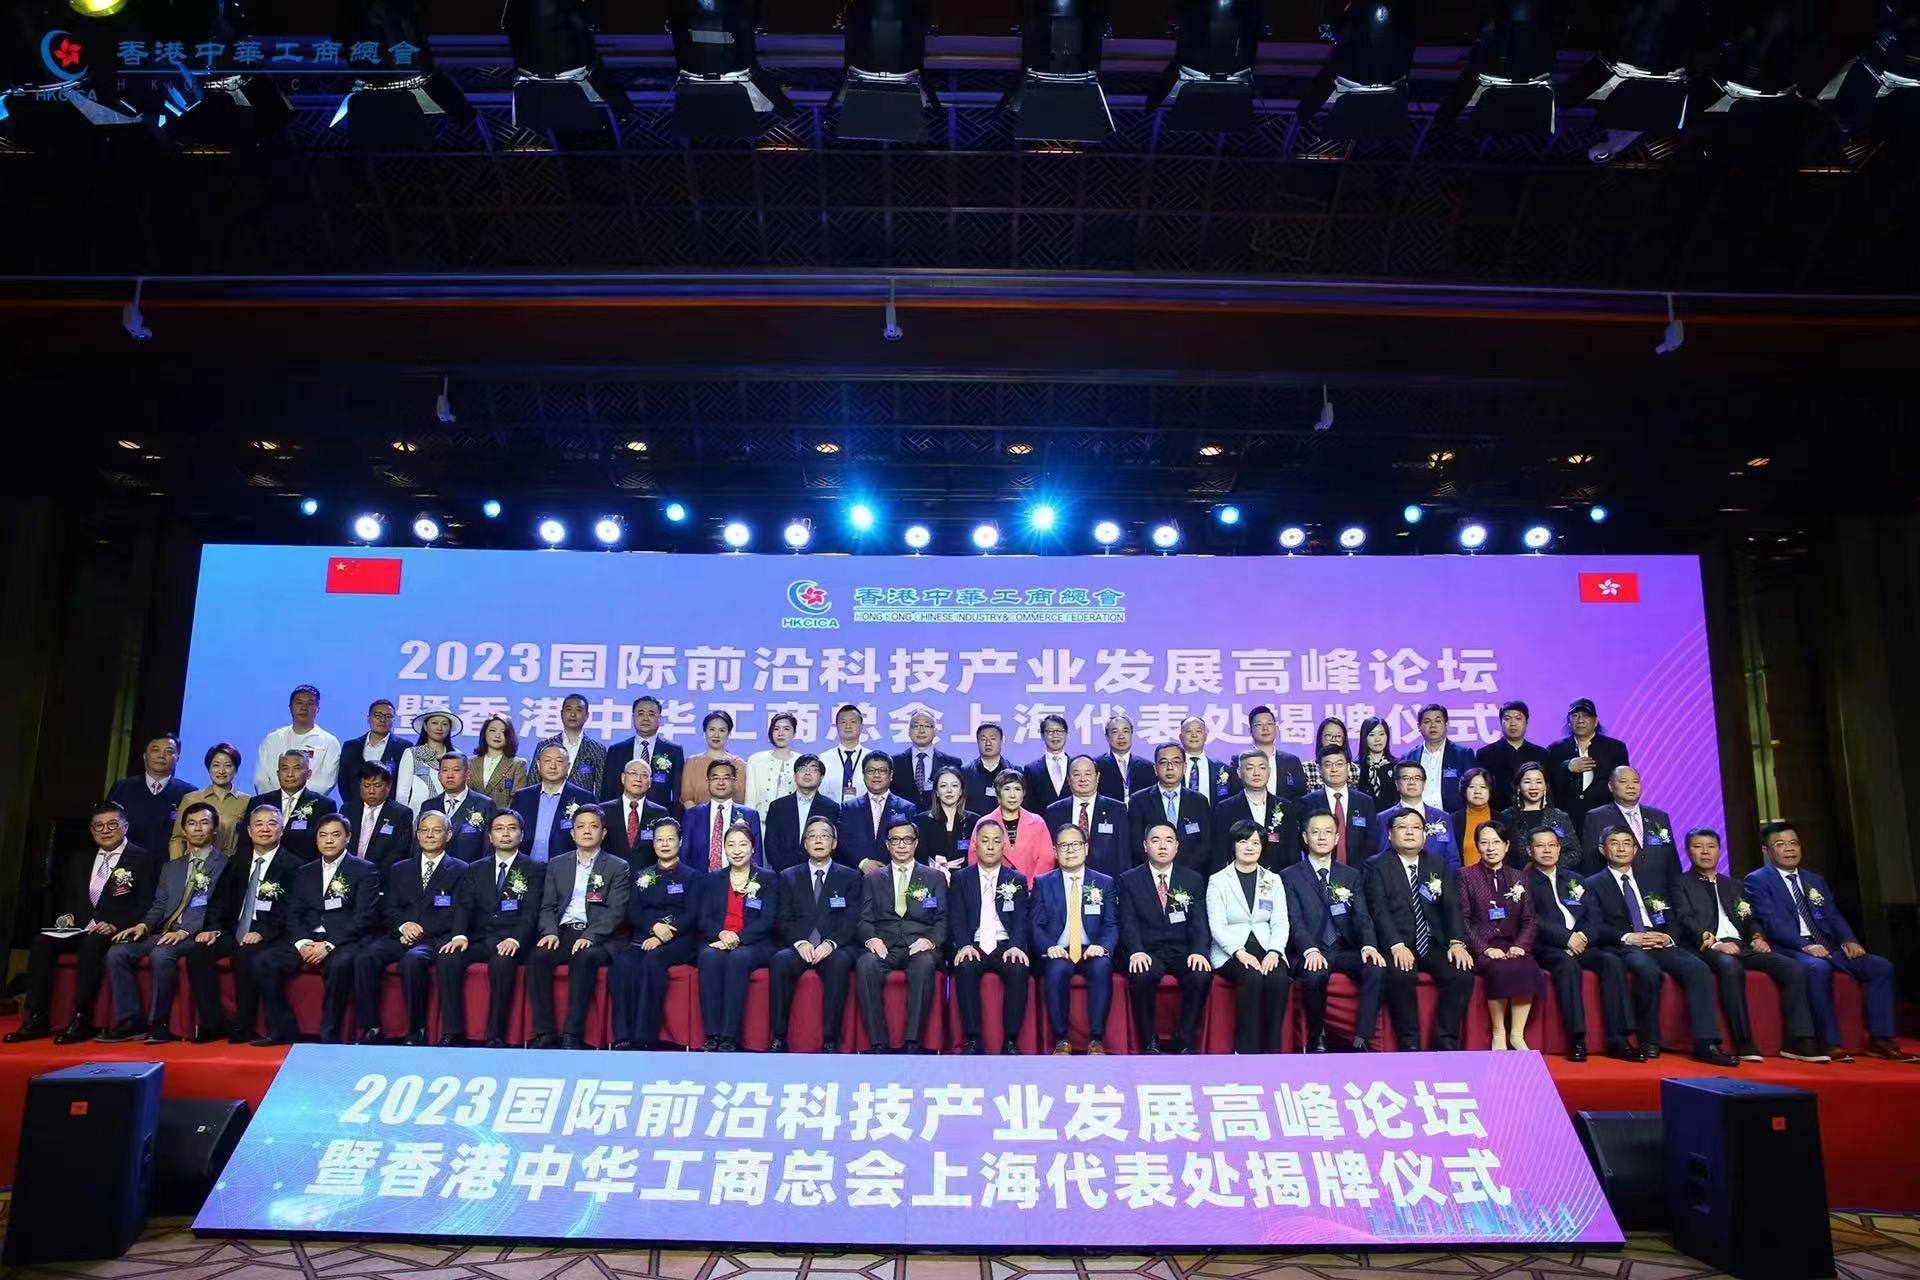 國際前沿科技產業發展高峰論壇暨香港中華工商總會上海代表處揭牌儀式成功舉辦